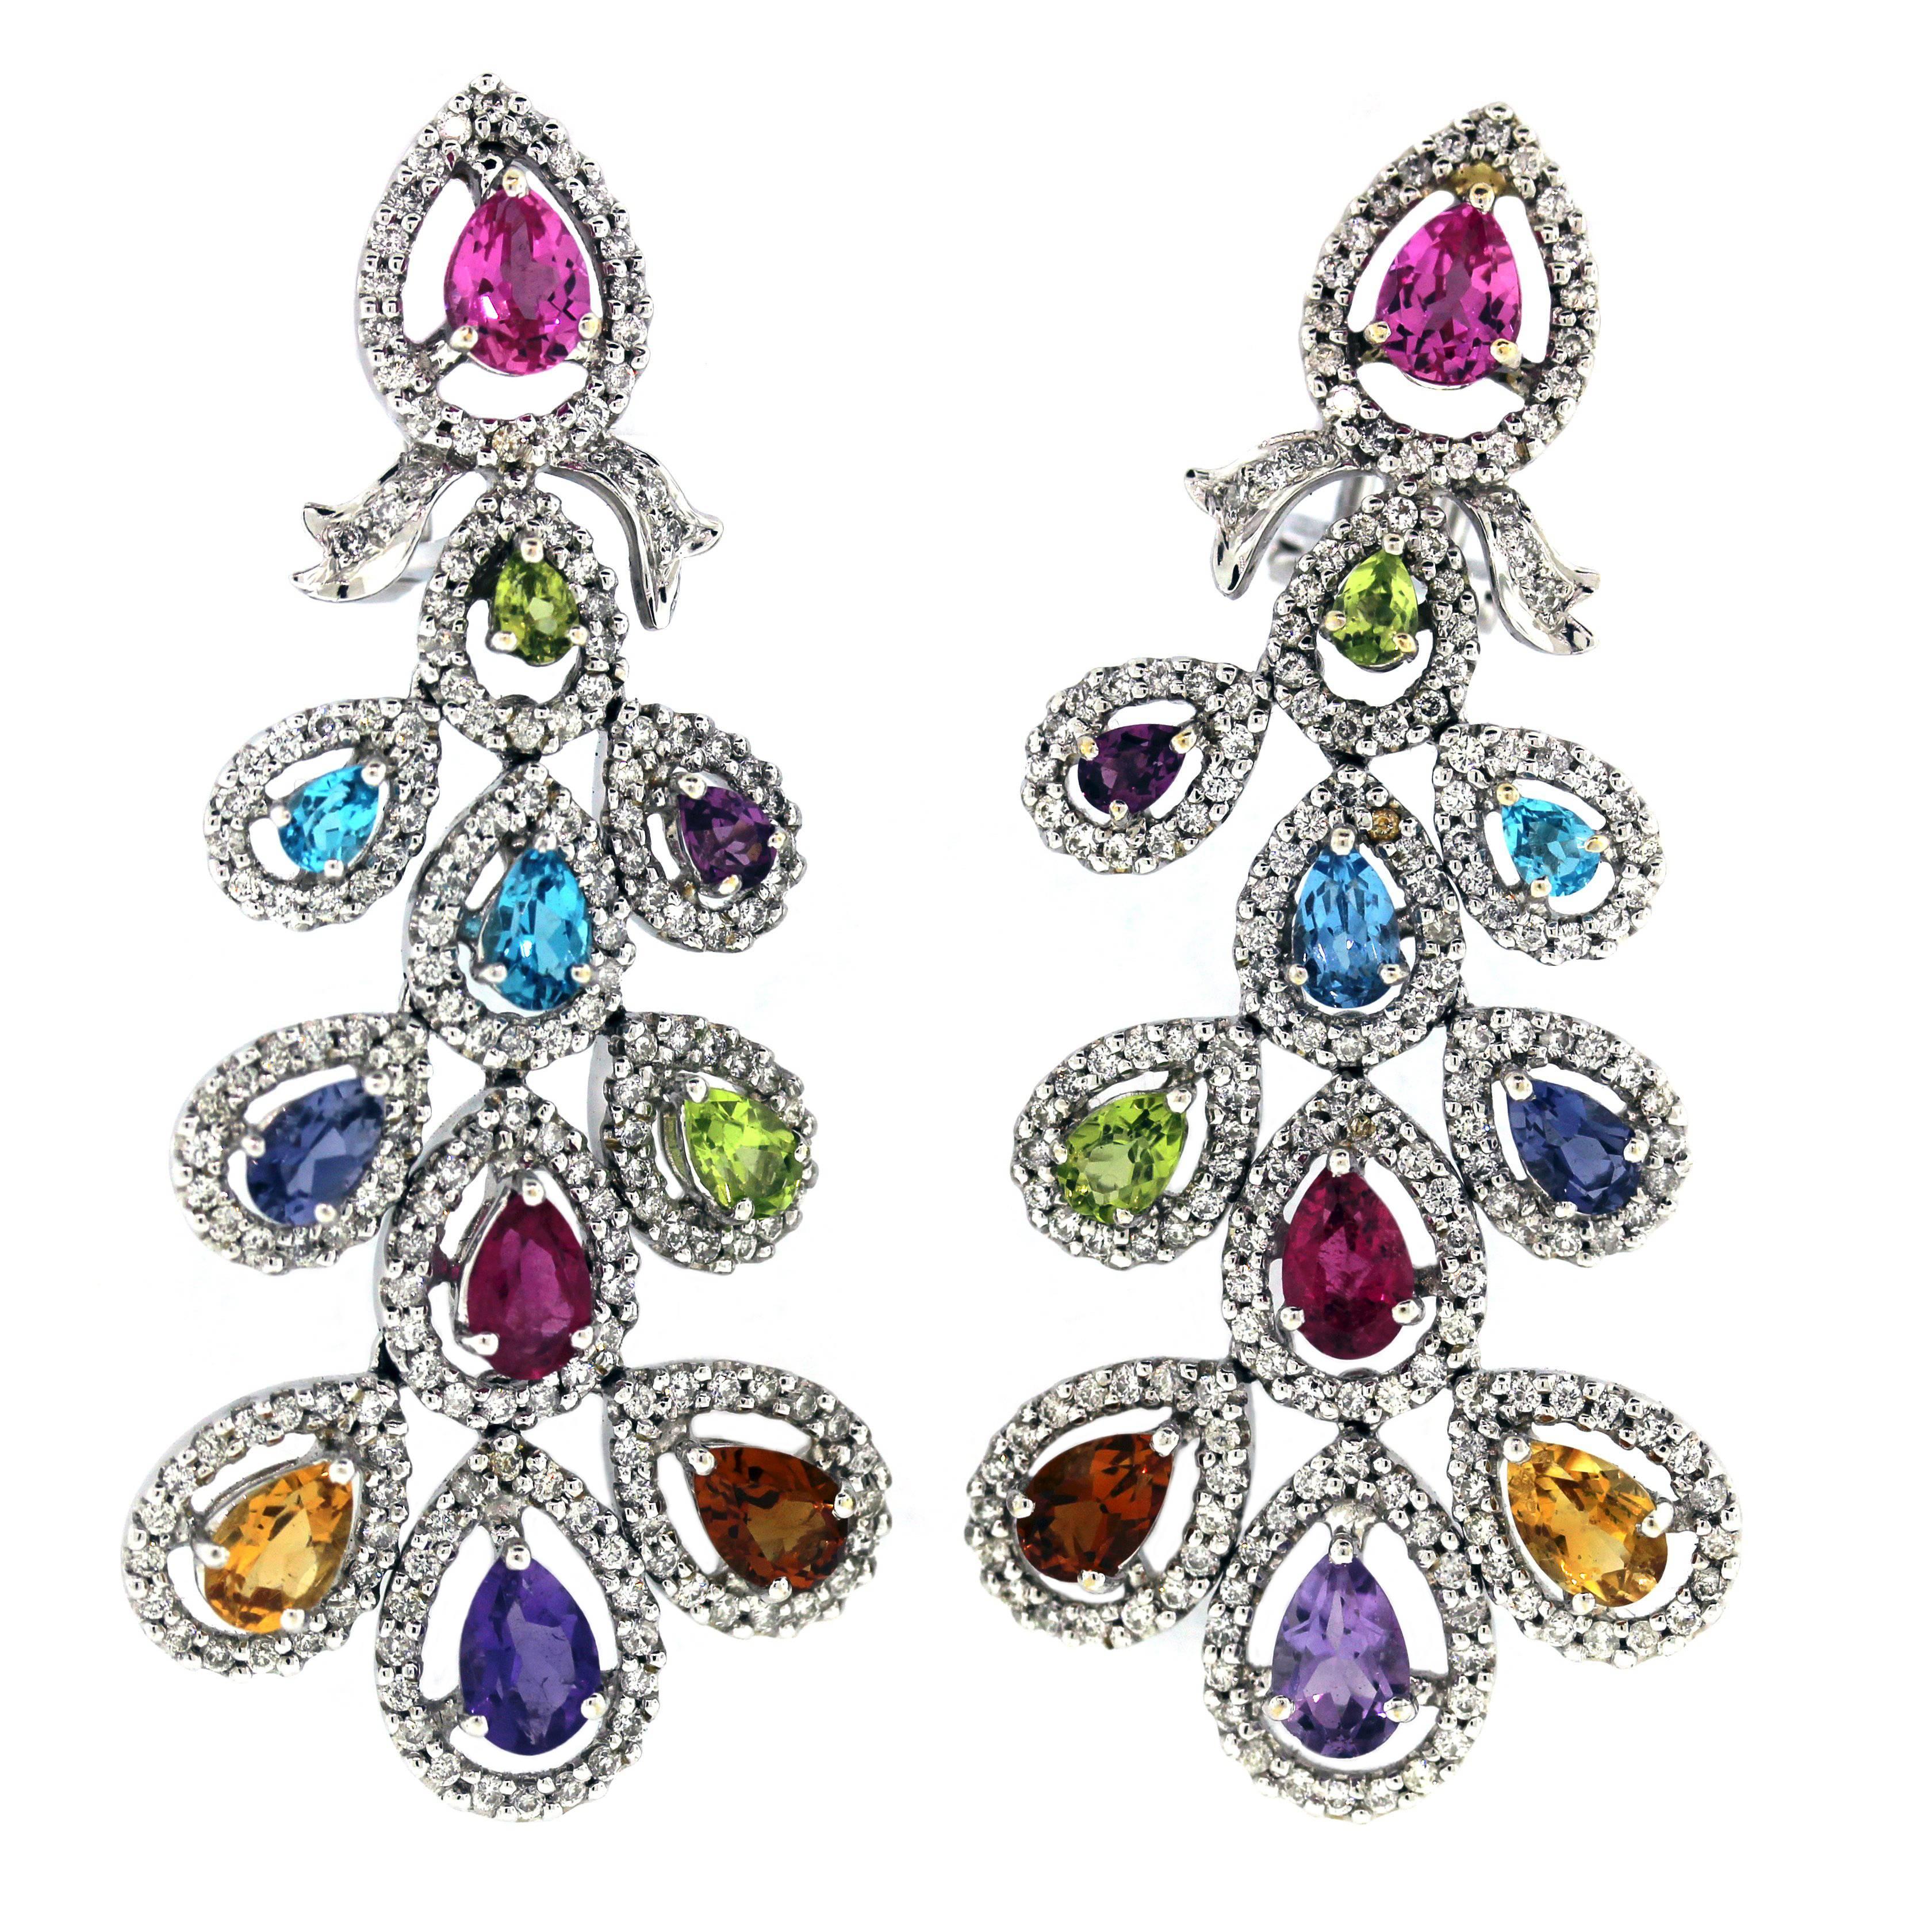 Multi-Color Gemstone Earrings